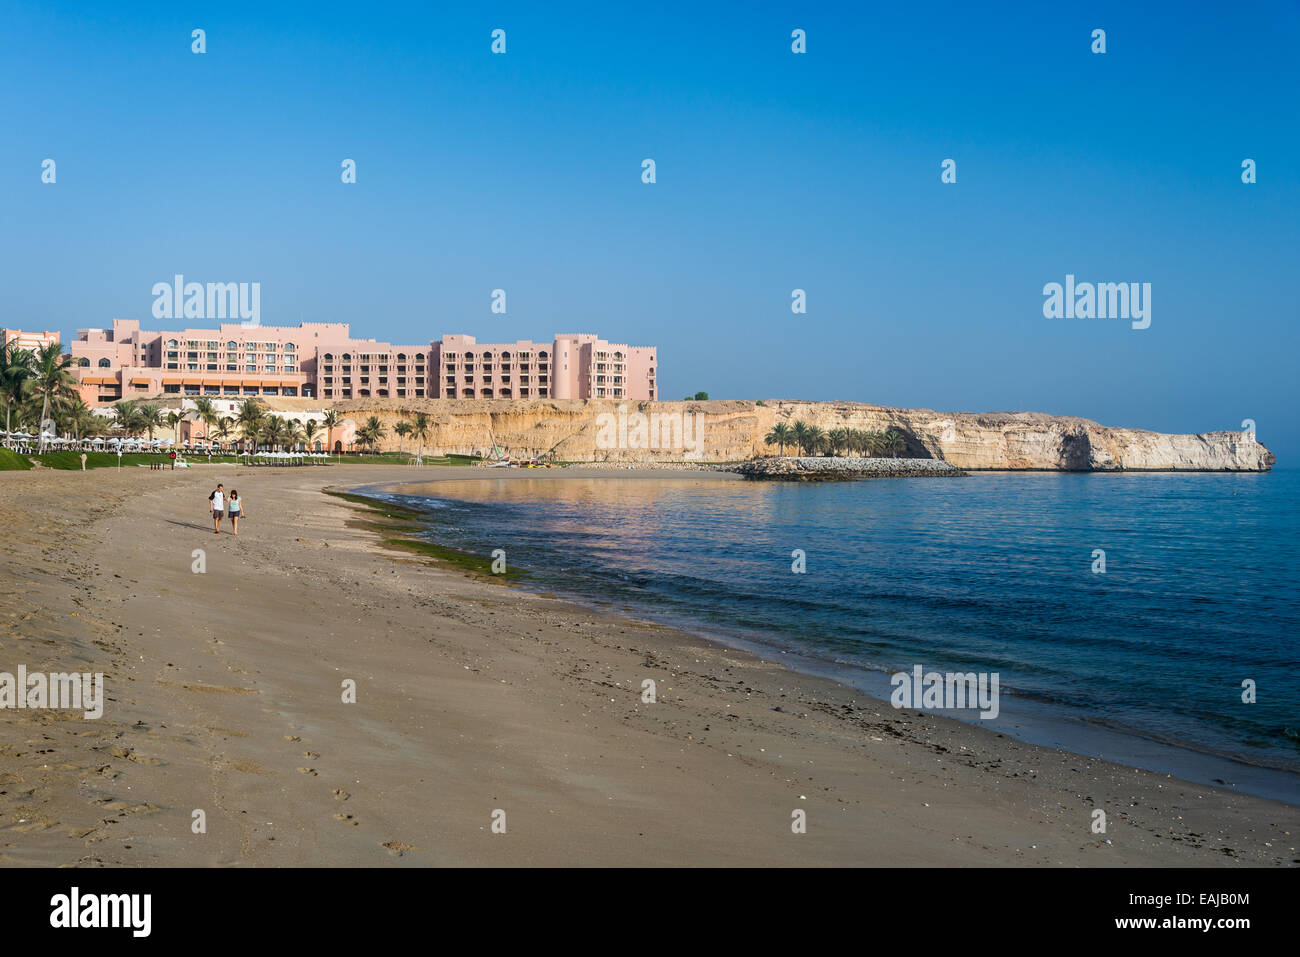 Luxushotel auf einem Kalksteinfelsen an einem Sandstrand. Muscat, Oman. Stockfoto